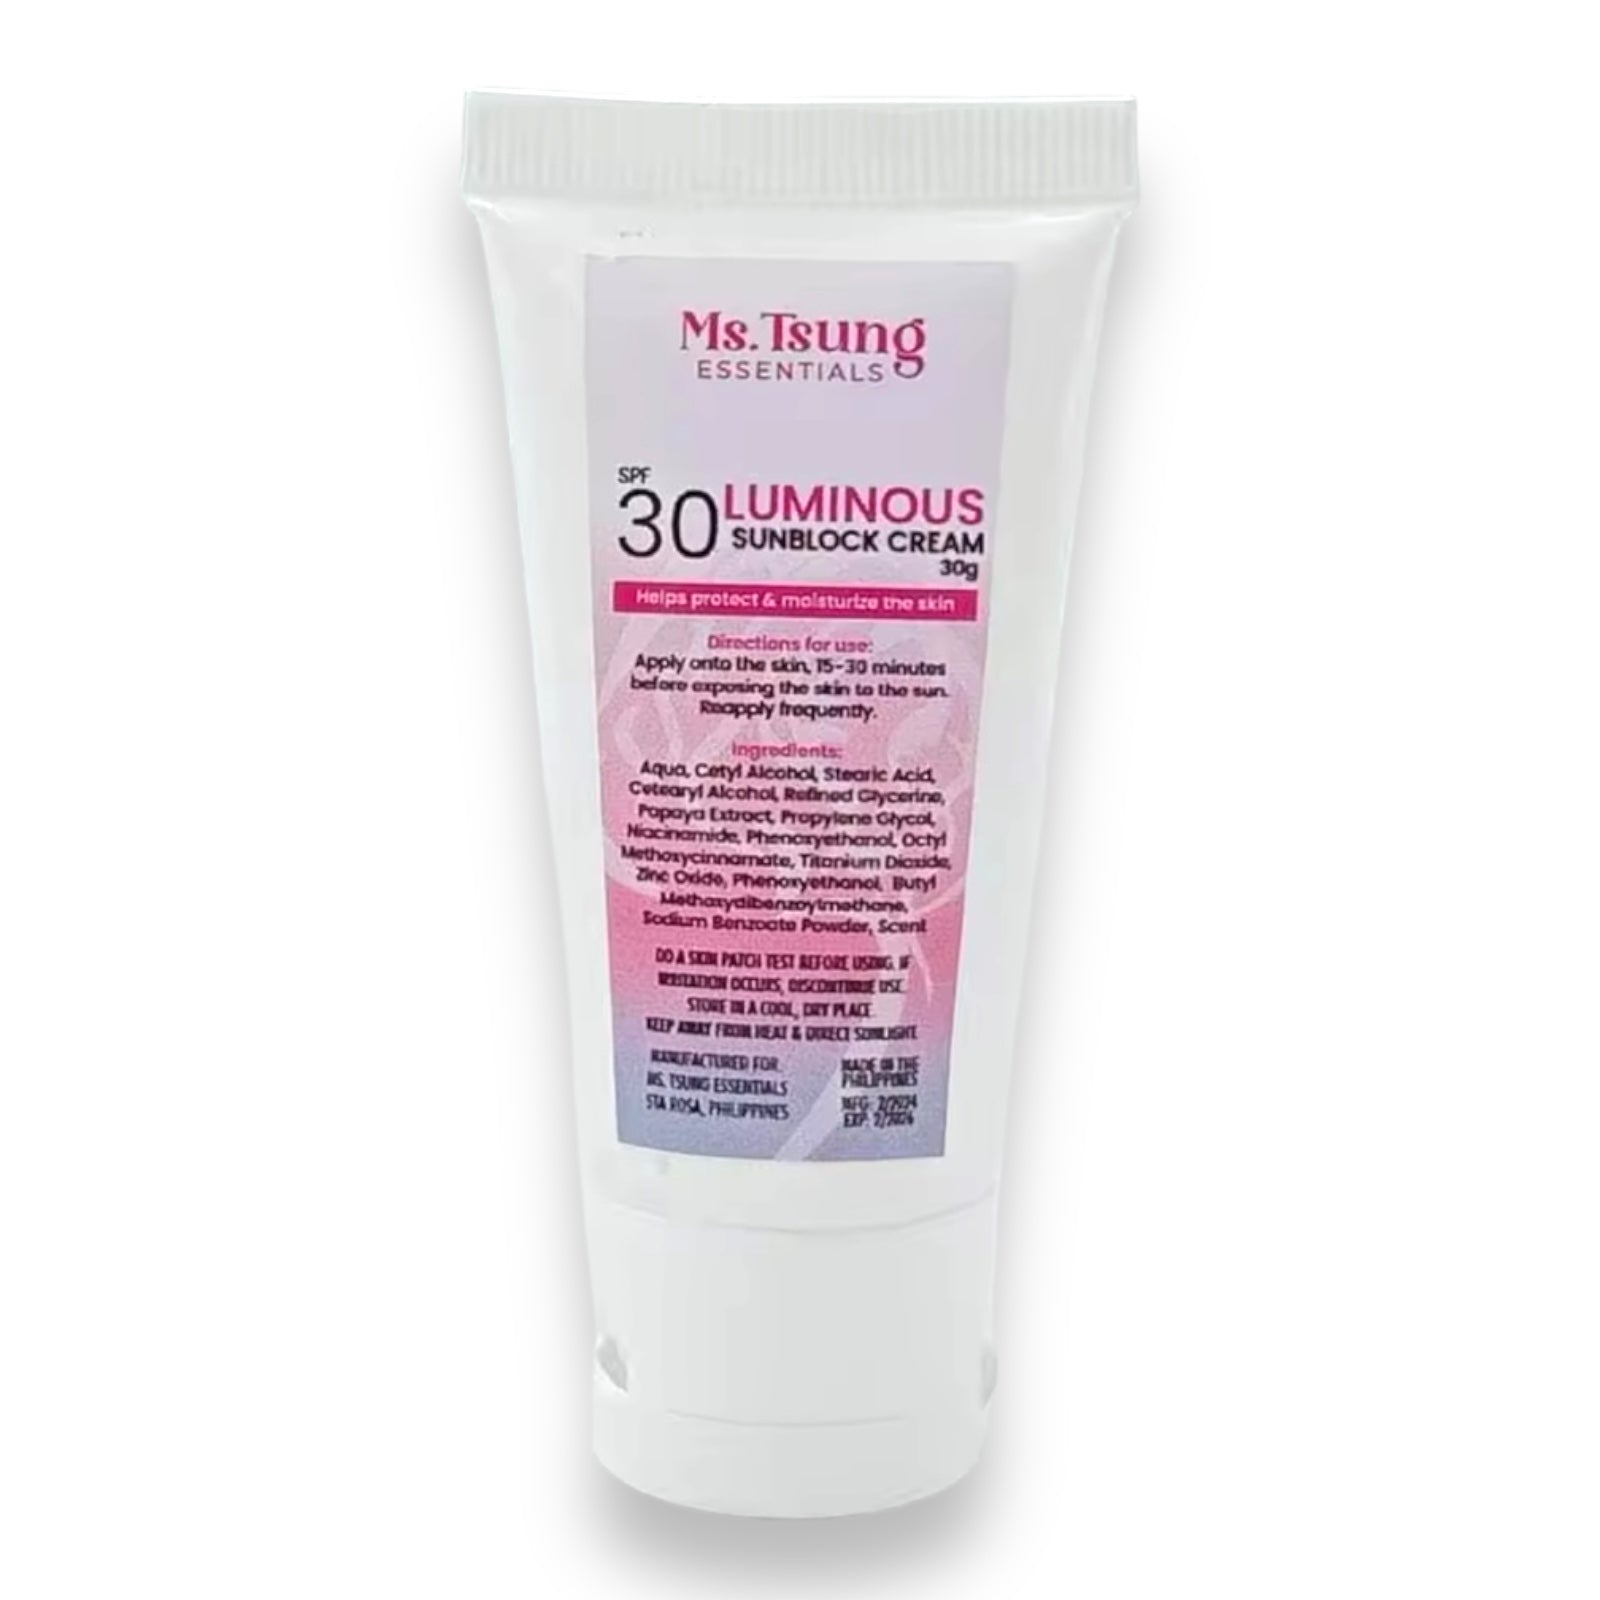 Ms. Tsung Essentials - Luminous Sunblock Cream SPF 30 - 30g